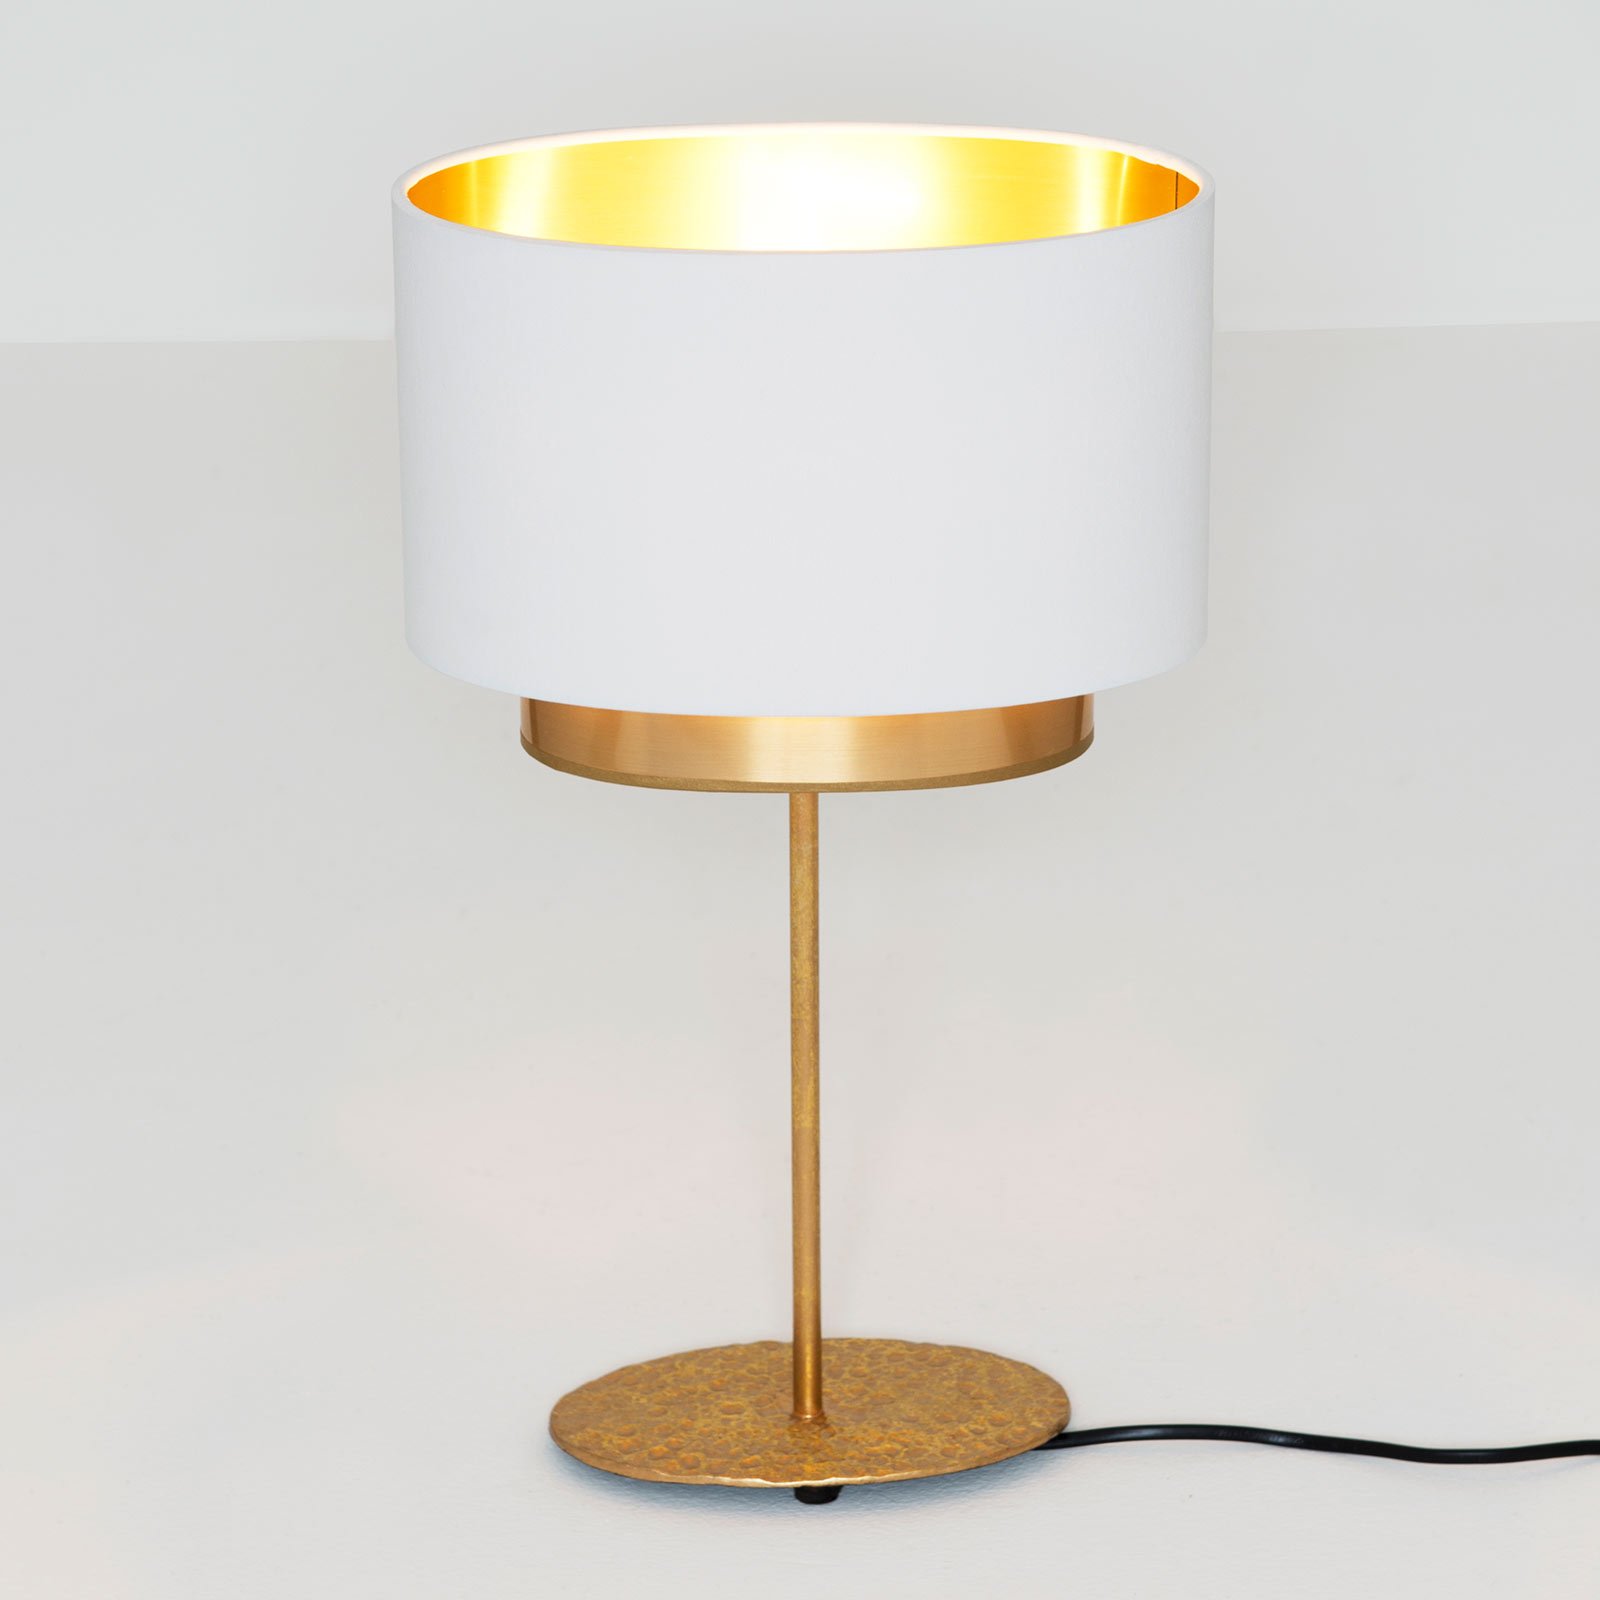 Lampă de masă Mattia, oval, dublă, alb/auriu